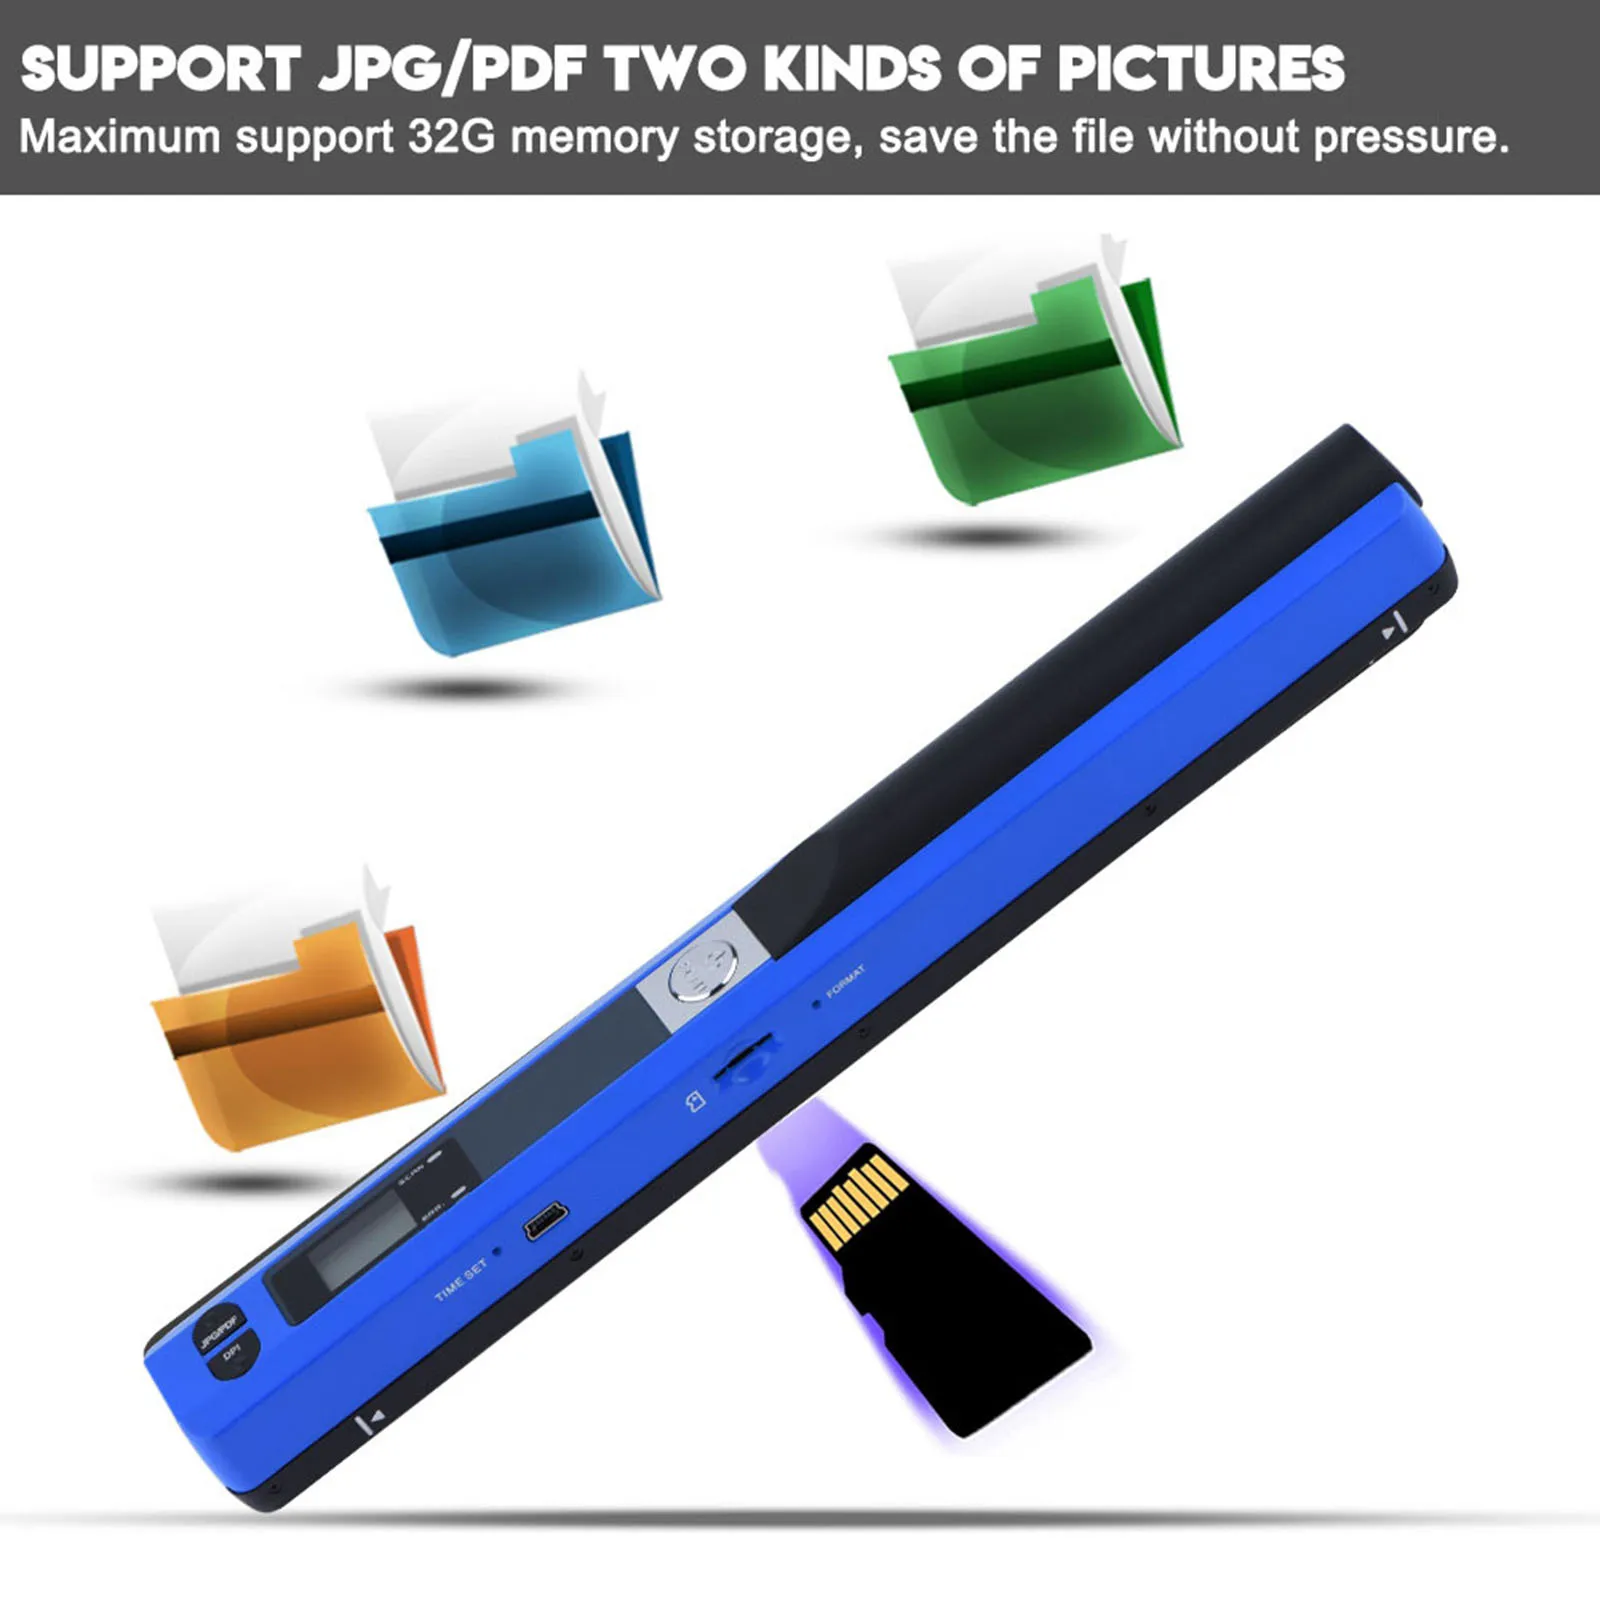 

Новый креативный Ручной портативный сканер изображений A4 для документов 900DPI USB2.0 сканер с поддержкой форматов JPG/PDF